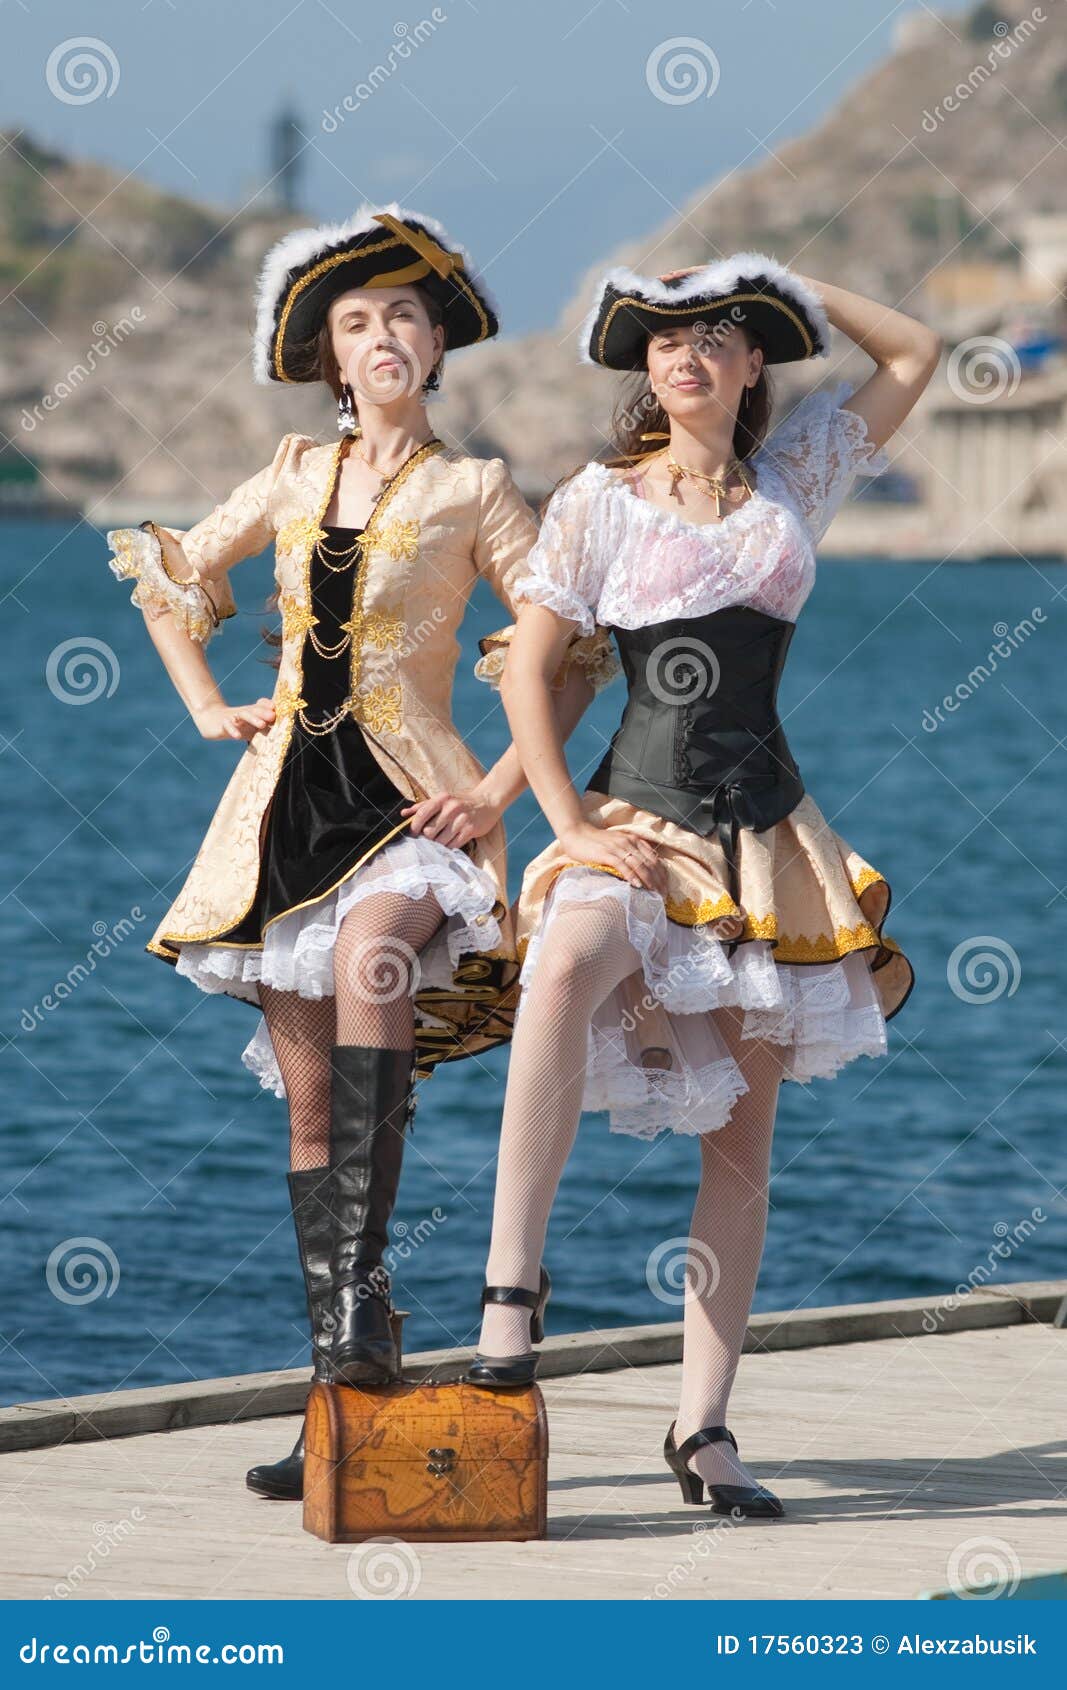 Nielegalnie kopiować kostium dziewczyny nielegalnie kopiować dwa. Kostiumów dziewczyn mola pirat dwa